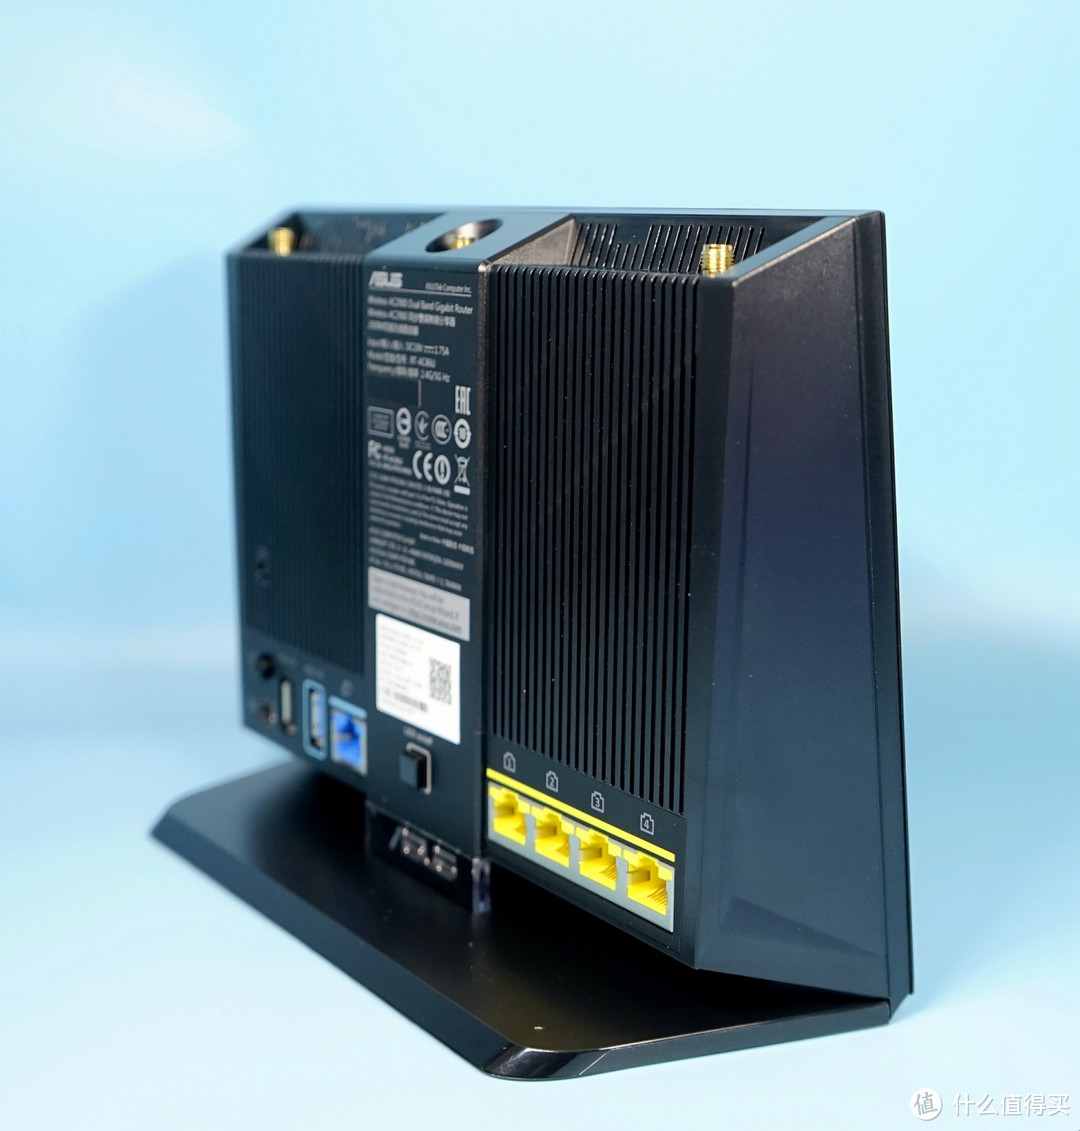 初探SRRC低辐射无线路由器——ASUS 华硕 RT-AC86U 无线路由器 入手开箱小测